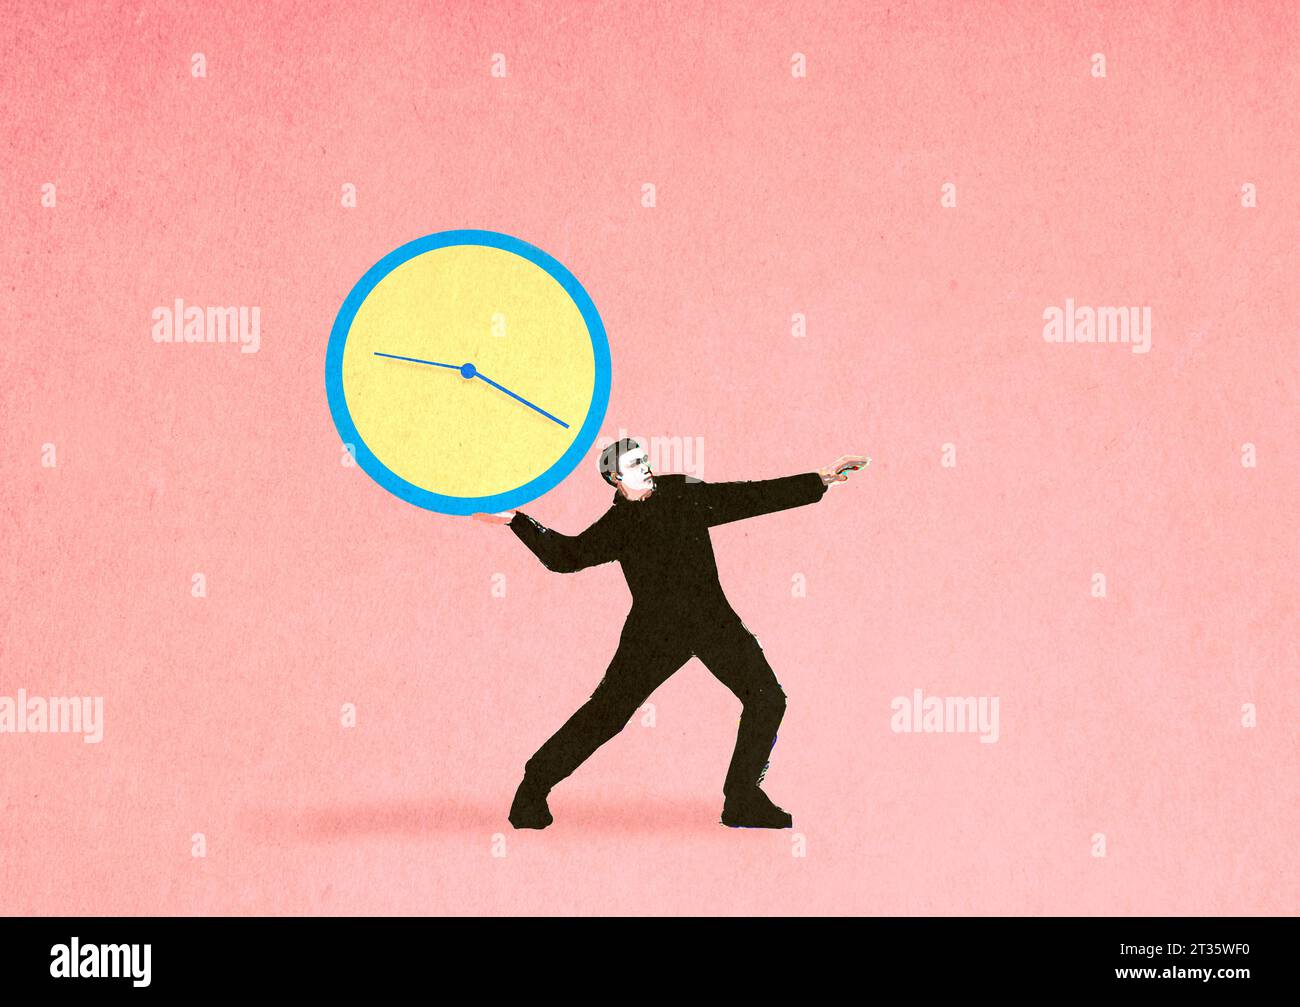 Ilustración del hombre lanzando el reloj que simboliza la fecha límite Foto de stock